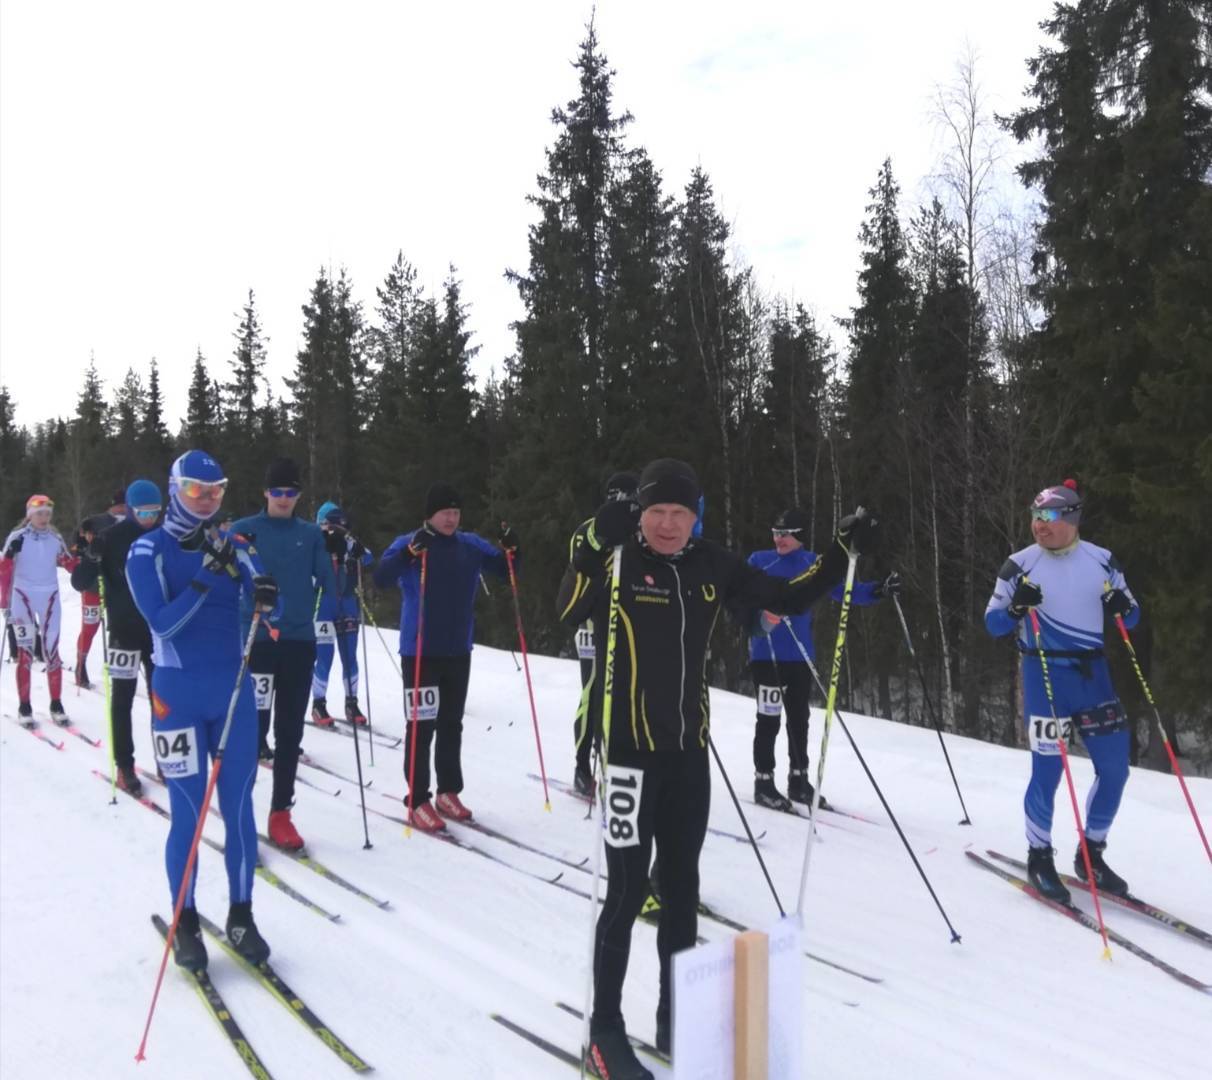 Sompiohiihto hiihdettiin 2.4. Sodankylässä noin 25 vuoden tauon jälkeen 